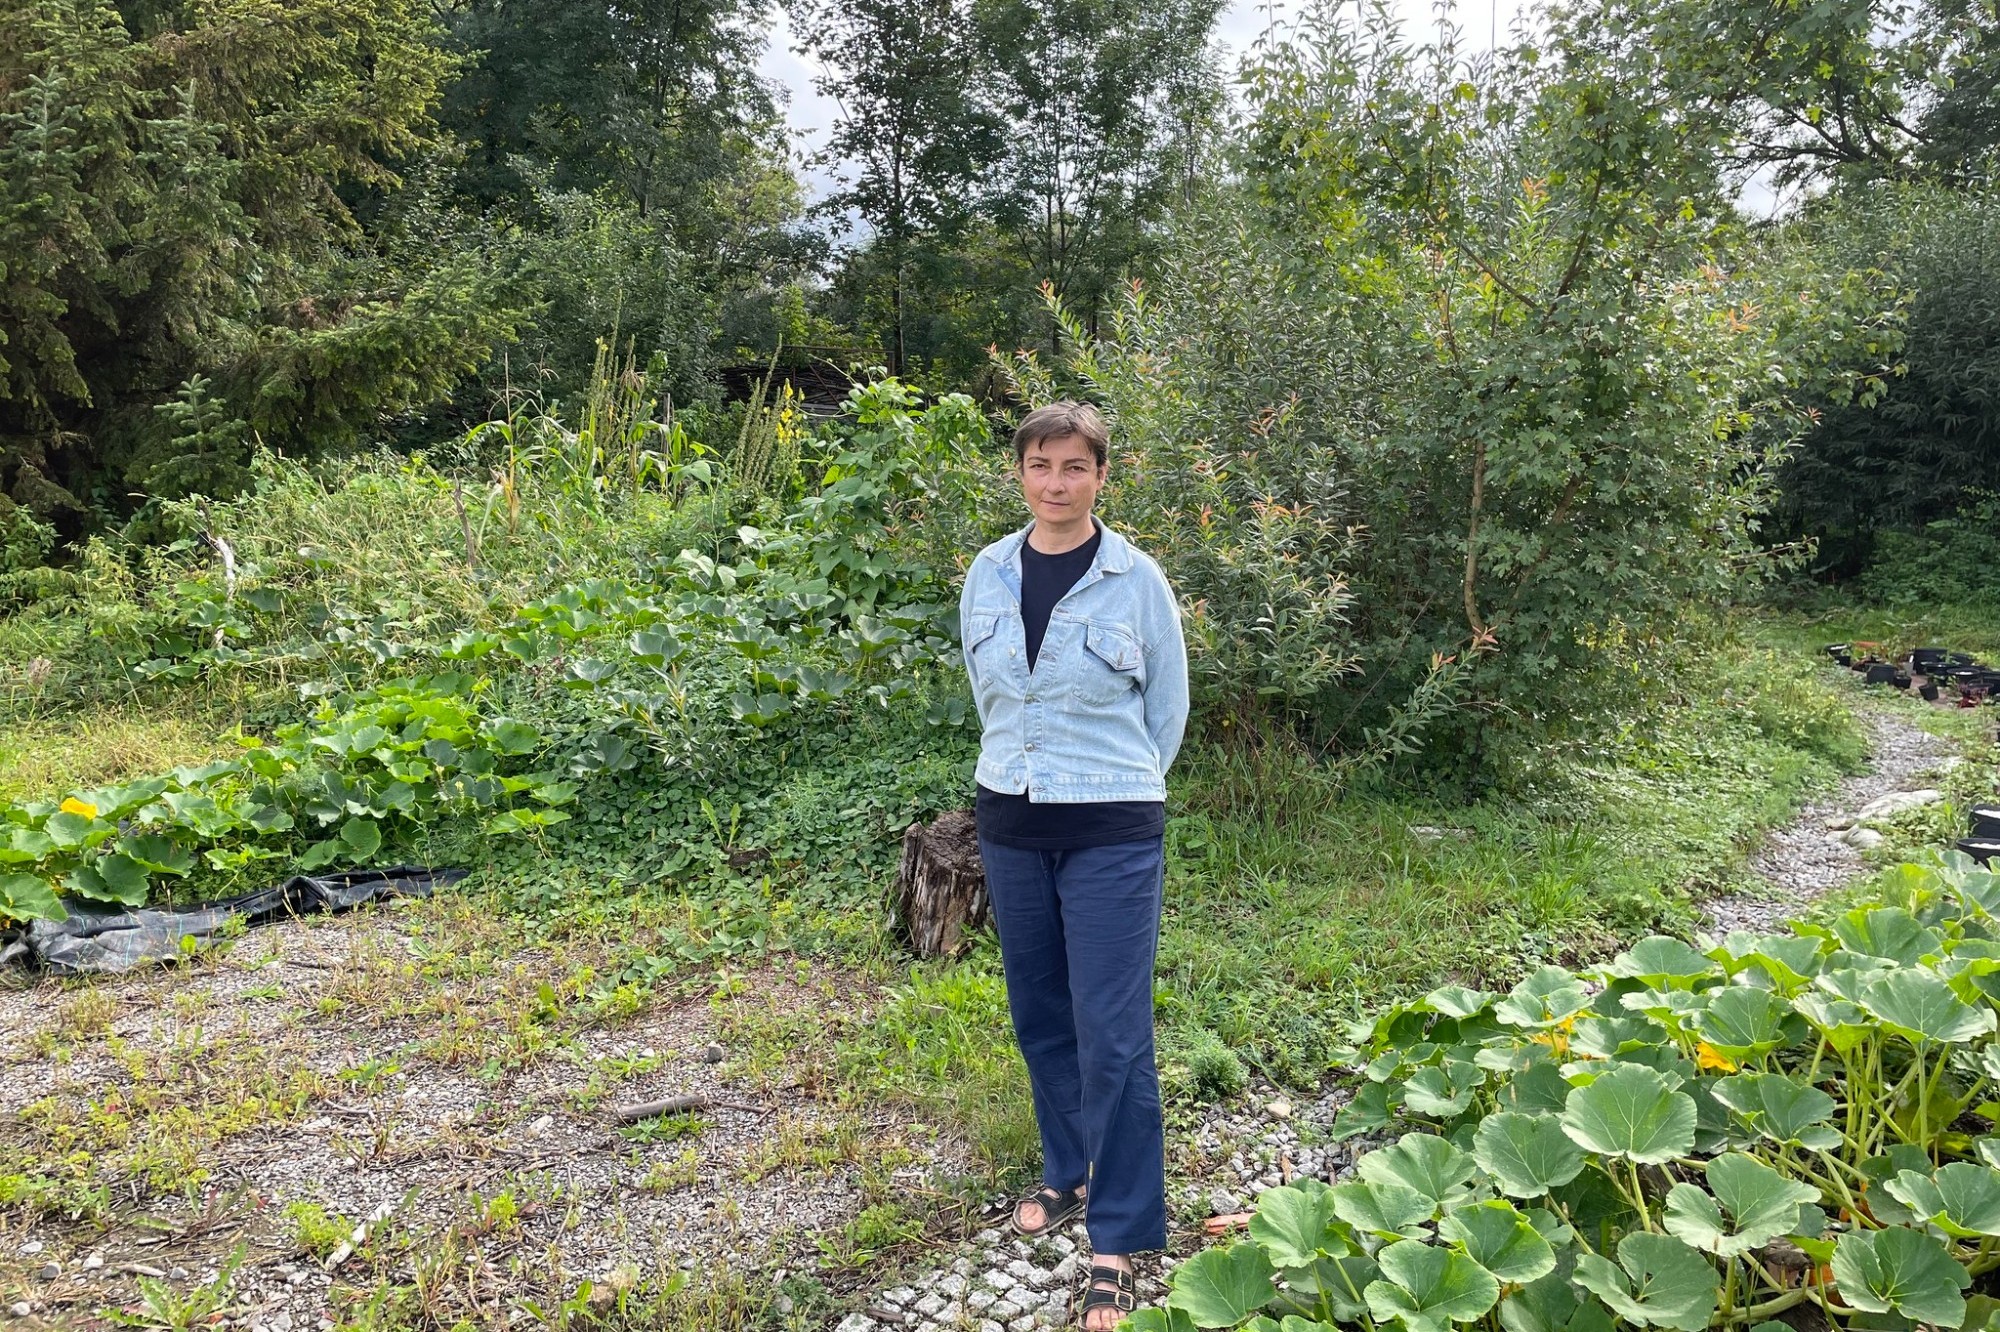 Rostliny jsou společenské a navzájem se podporují, říká průkopnice vertikálních zahrad v Česku Zuzana Klusová